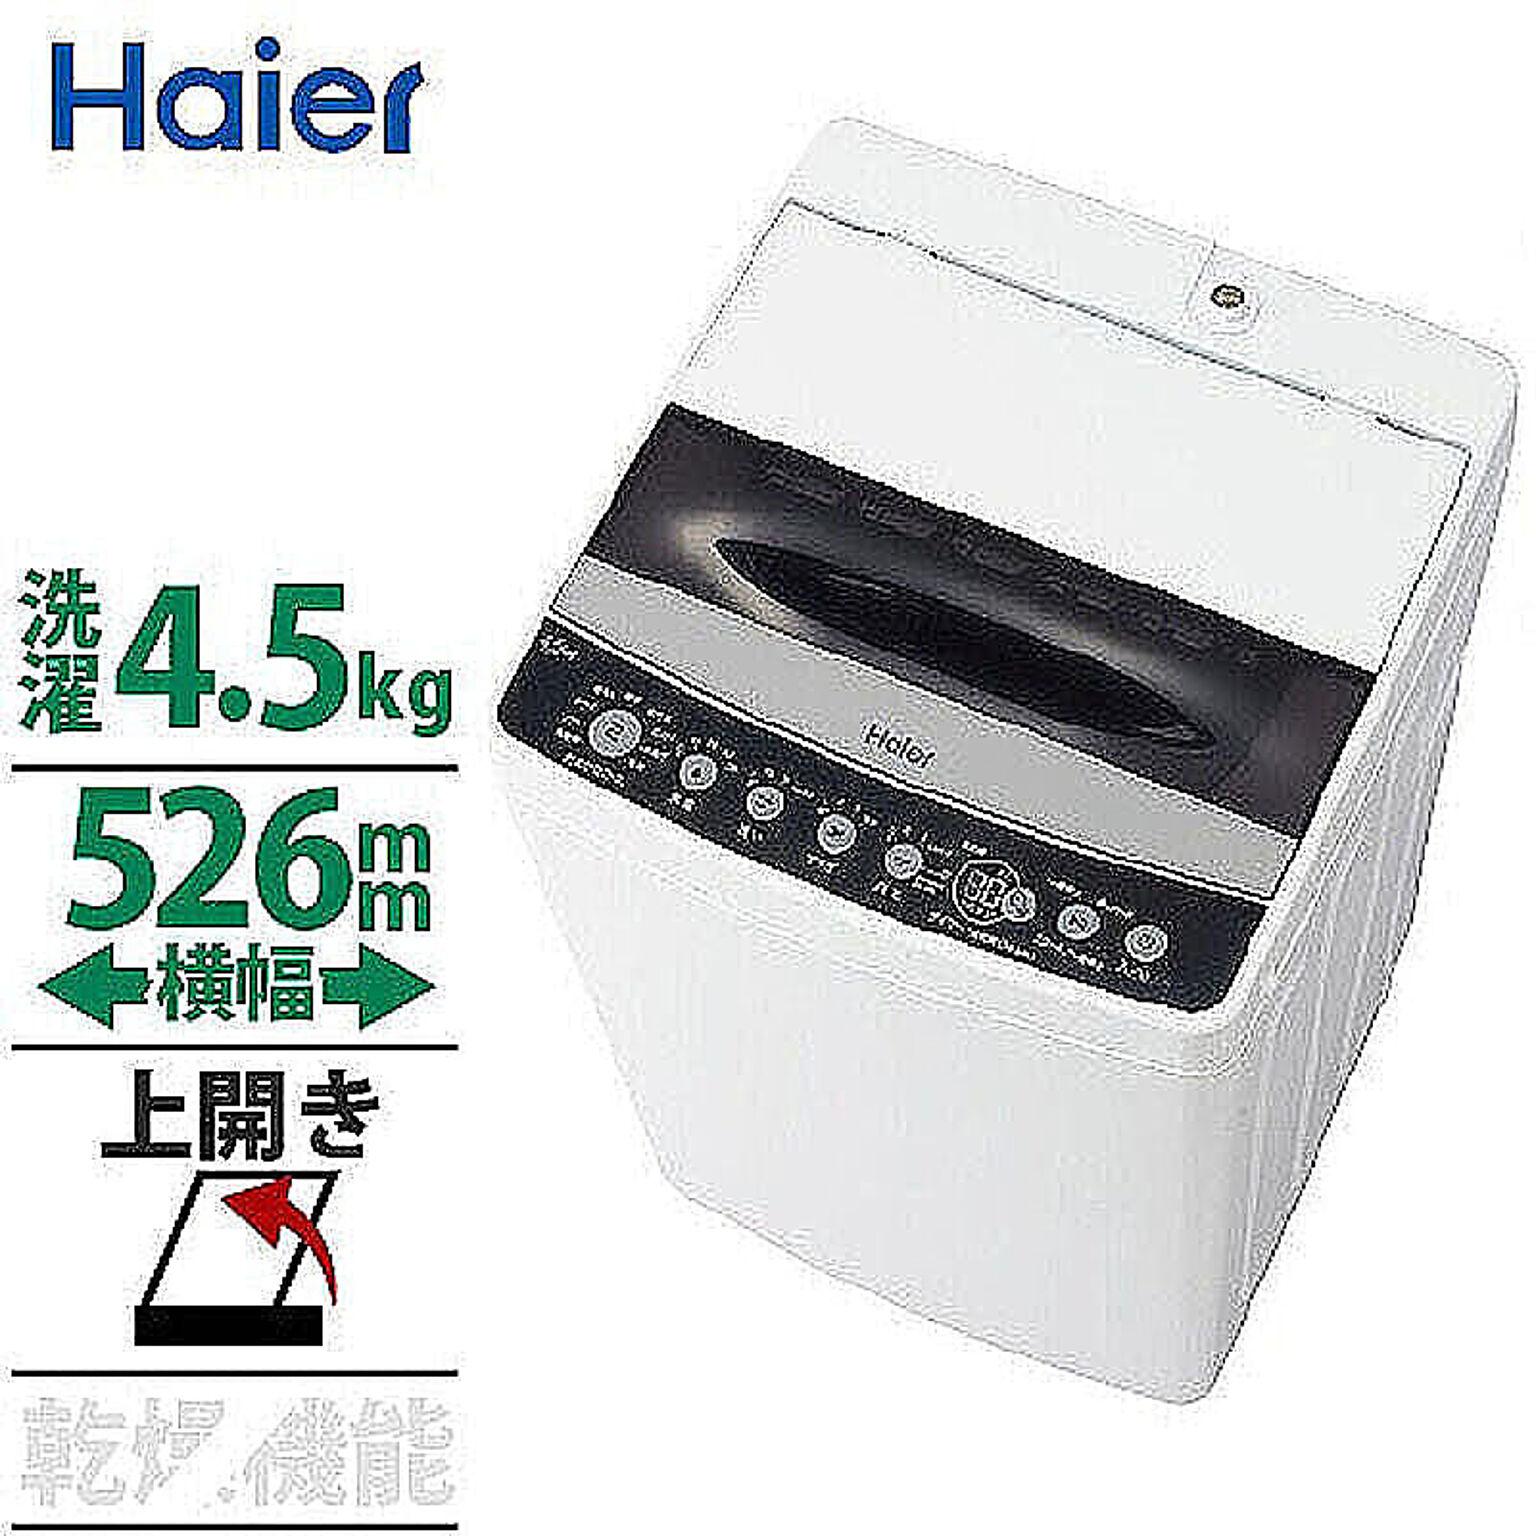 ハイアール 4.5kg 全自動洗濯機 ホワイト Haier JW-C45D-K 管理No. 4562117086934